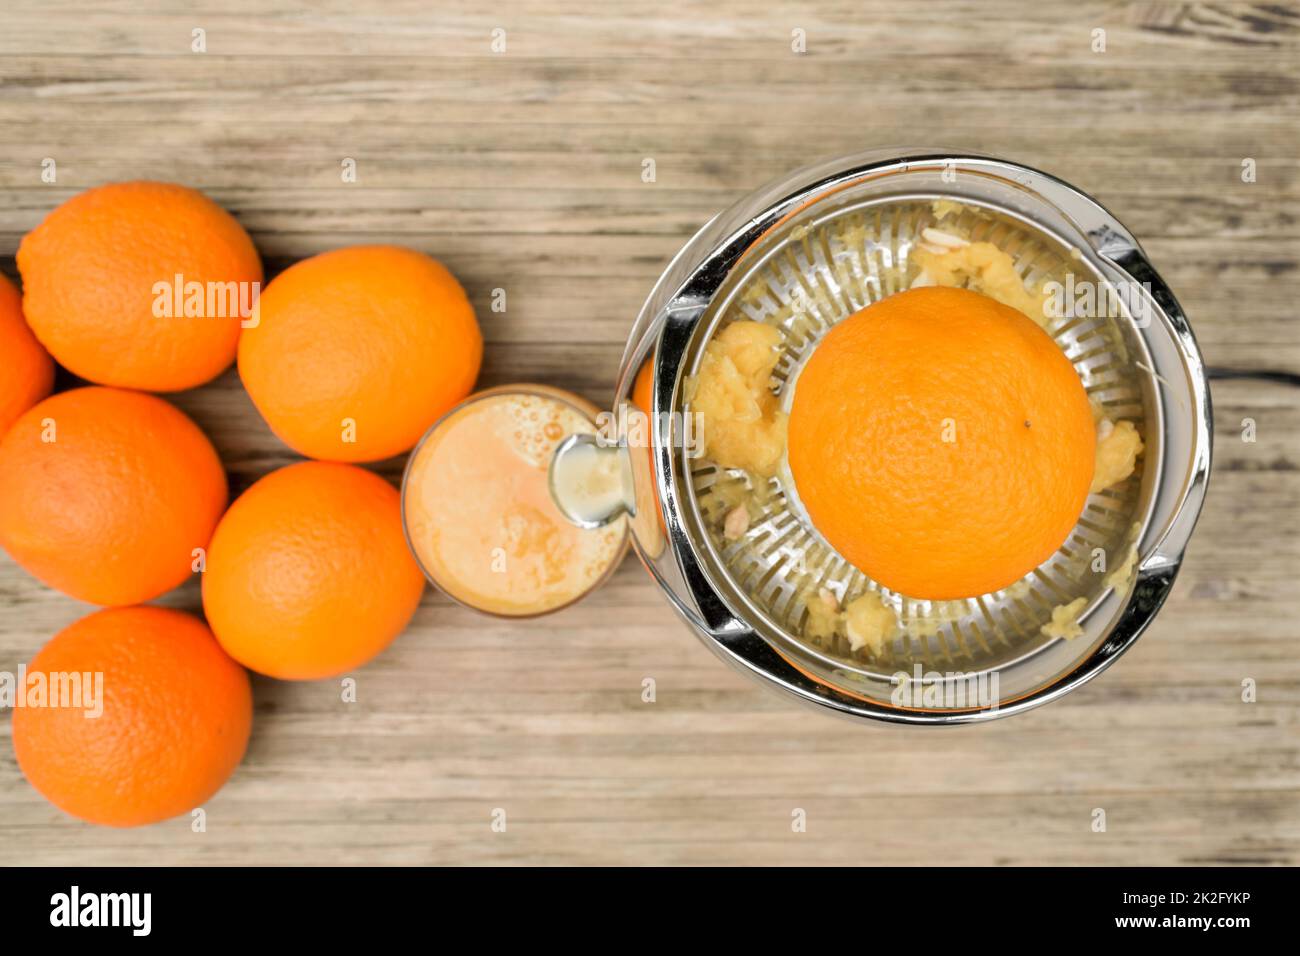 Vue de dessus d'une orange tout en jugivrant avec un presse-agrumes électrique Banque D'Images